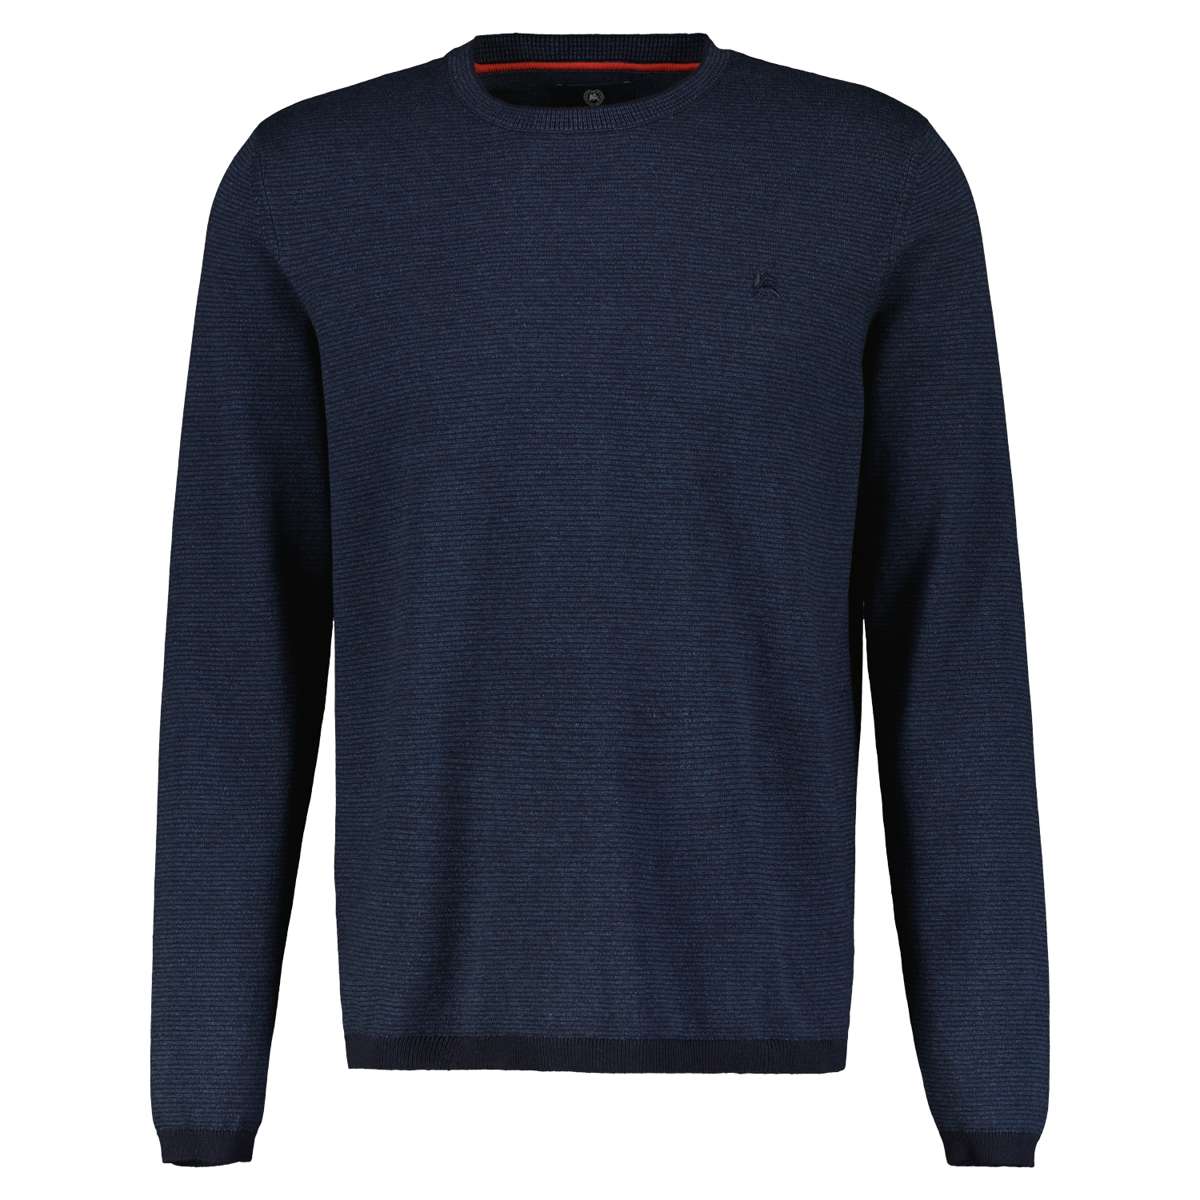 Вязаный свитер с логотипом спереди.